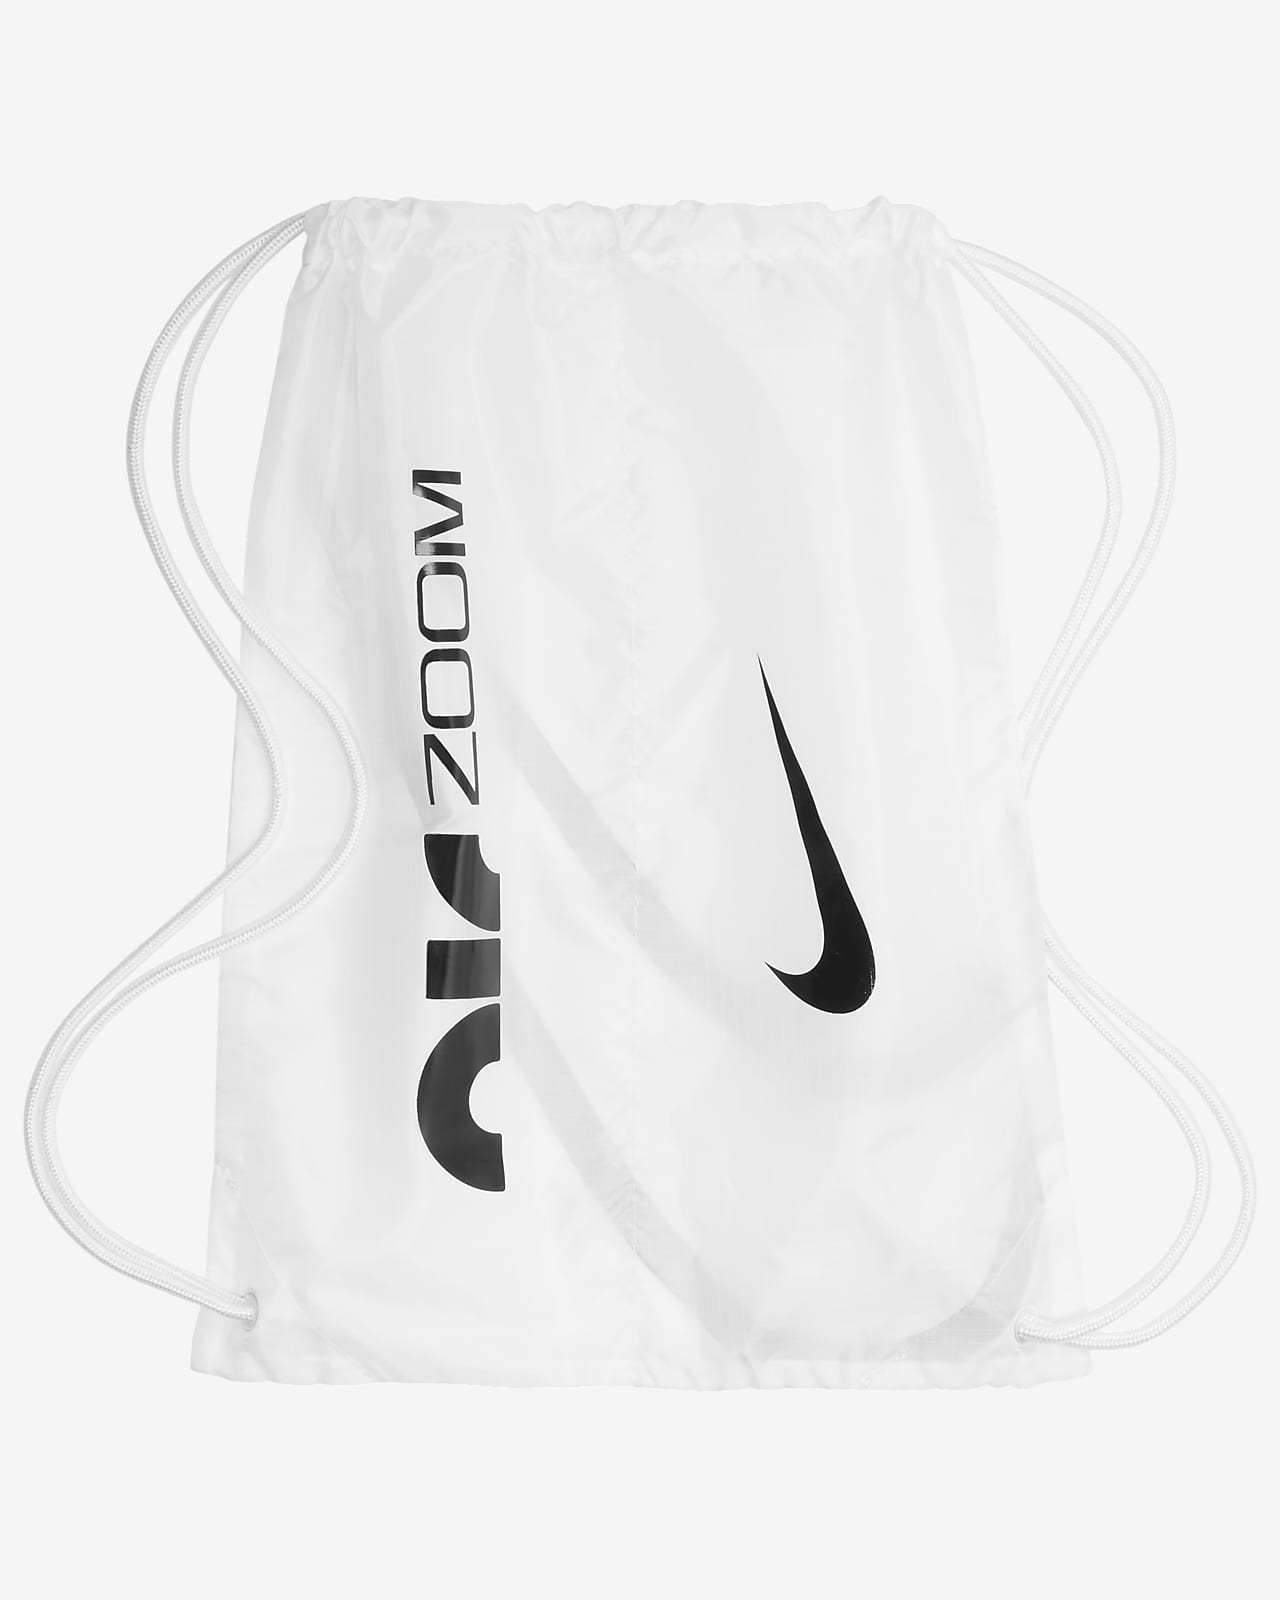 Articulación estudio caliente Nike Air Zoom Maxfly Athletics Sprinting Spikes. Nike GB